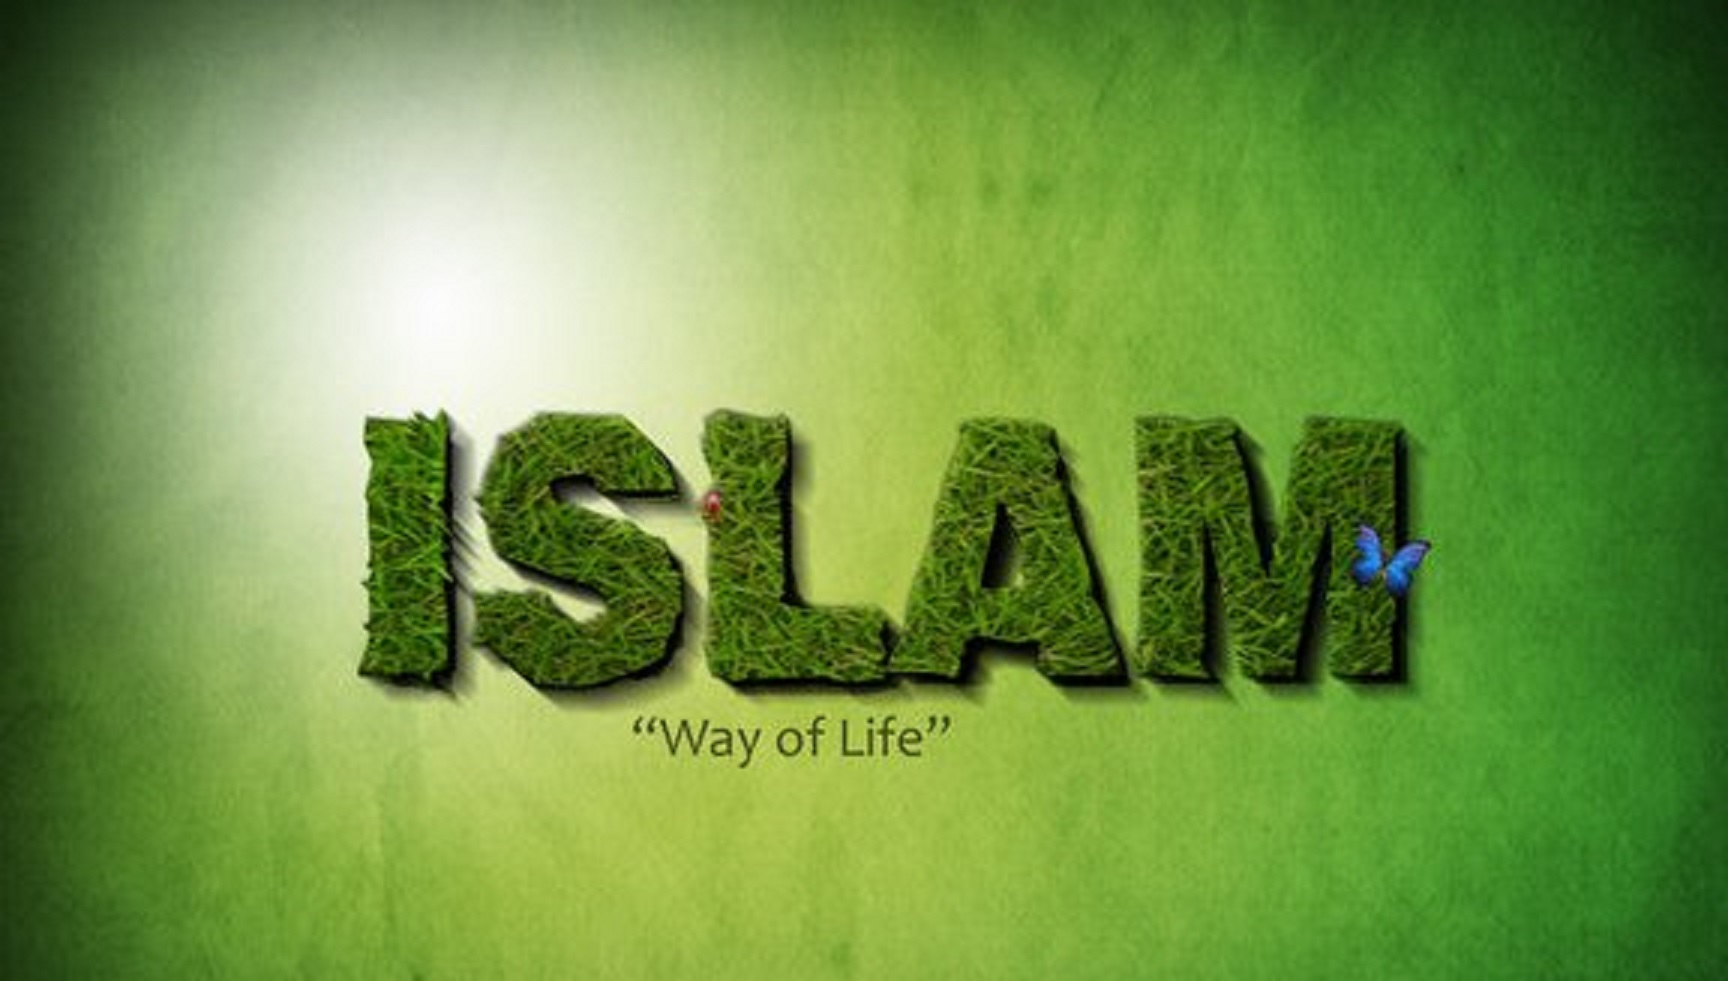 يحرص الإسلام على حماية من يعيش في مجتمع مسلم ولو كان غير مسلم.